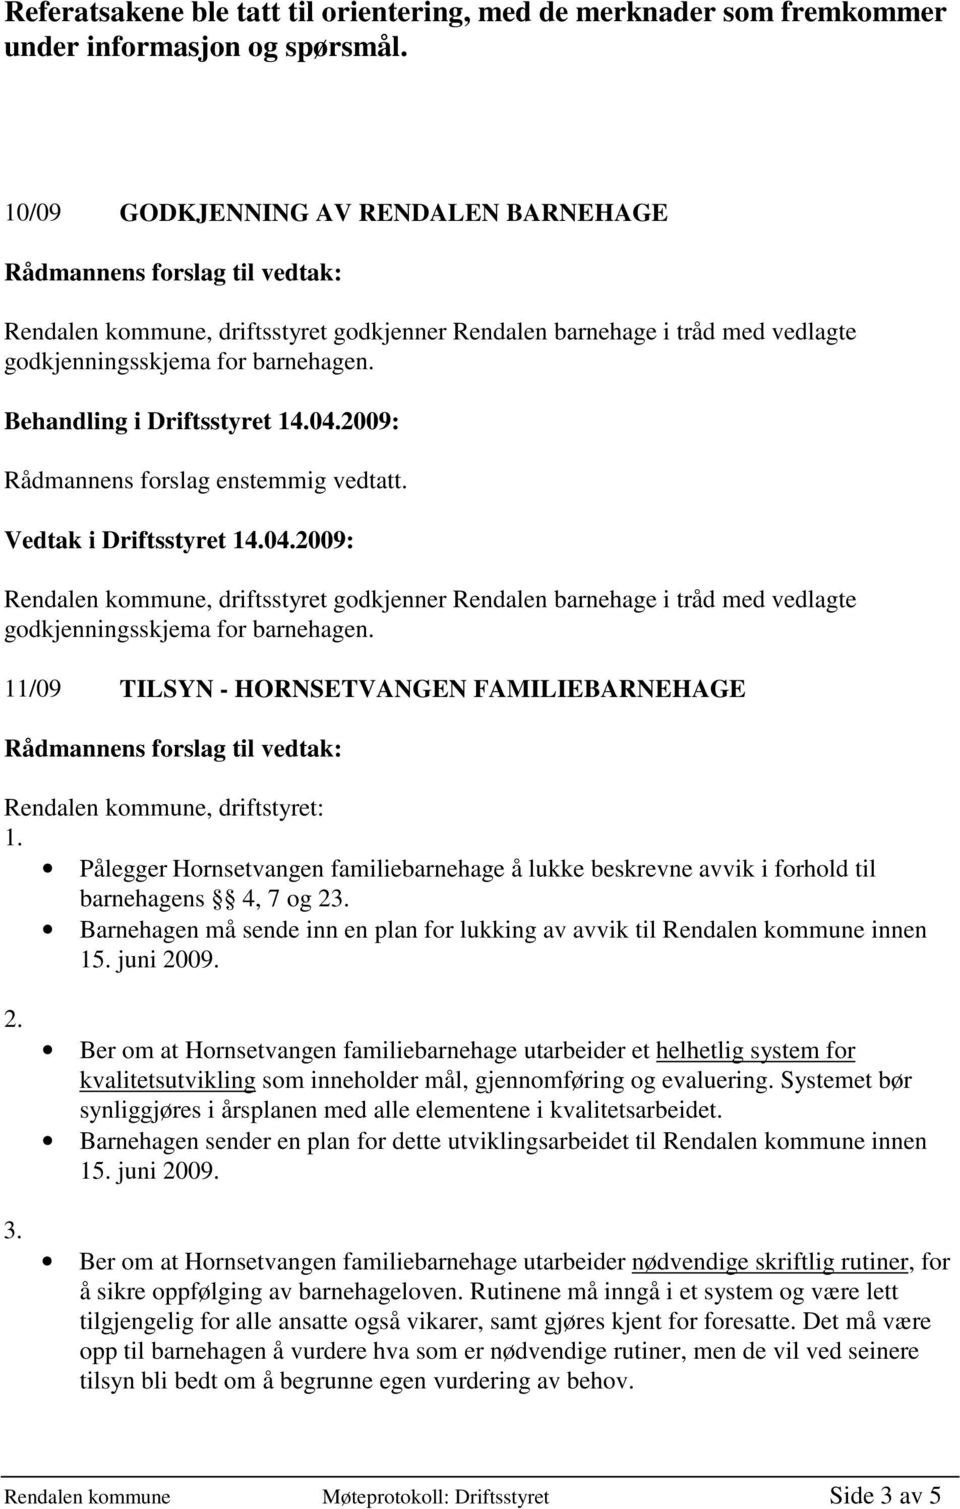 Vedtak i Driftsstyret 14.04.2009: Rendalen kommune, driftsstyret godkjenner Rendalen barnehage i tråd med vedlagte godkjenningsskjema for barnehagen.